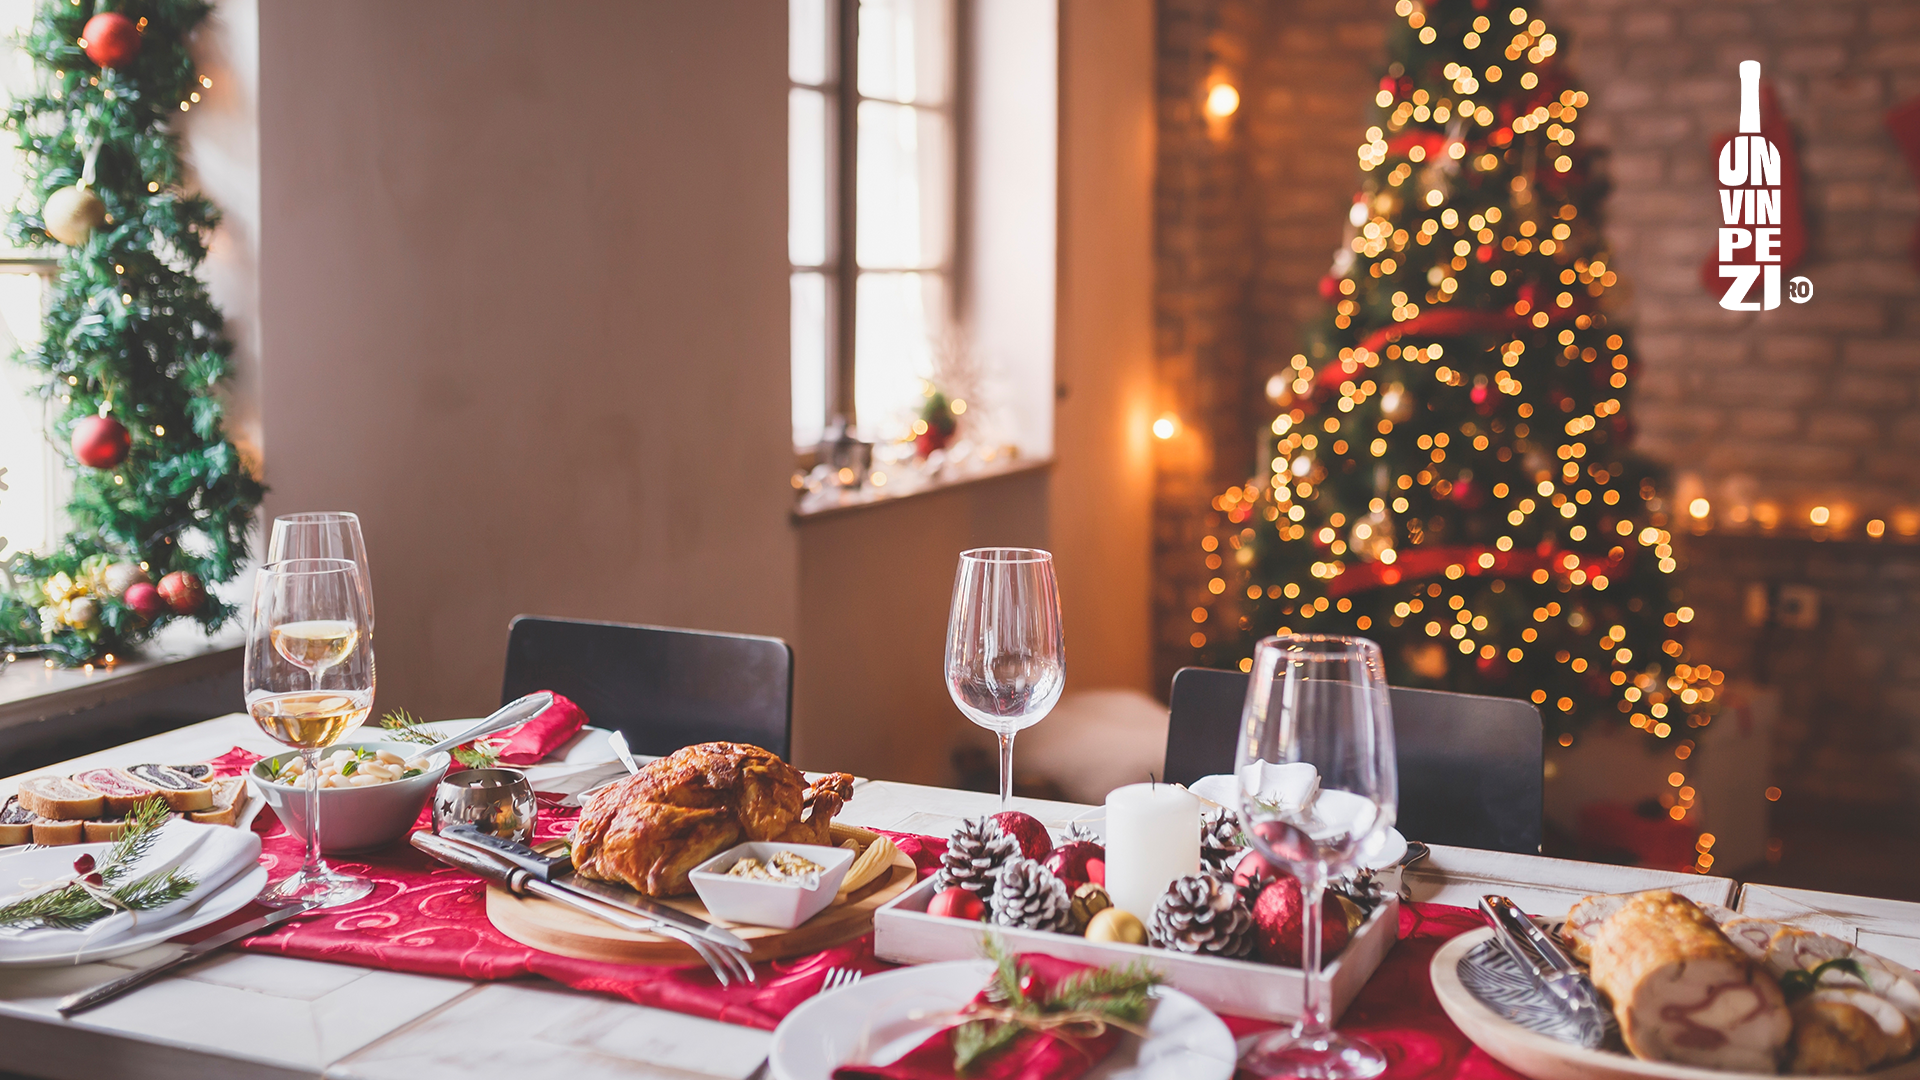 Vinuri recomandate pentru preparatele tradiţionale de Crăciun